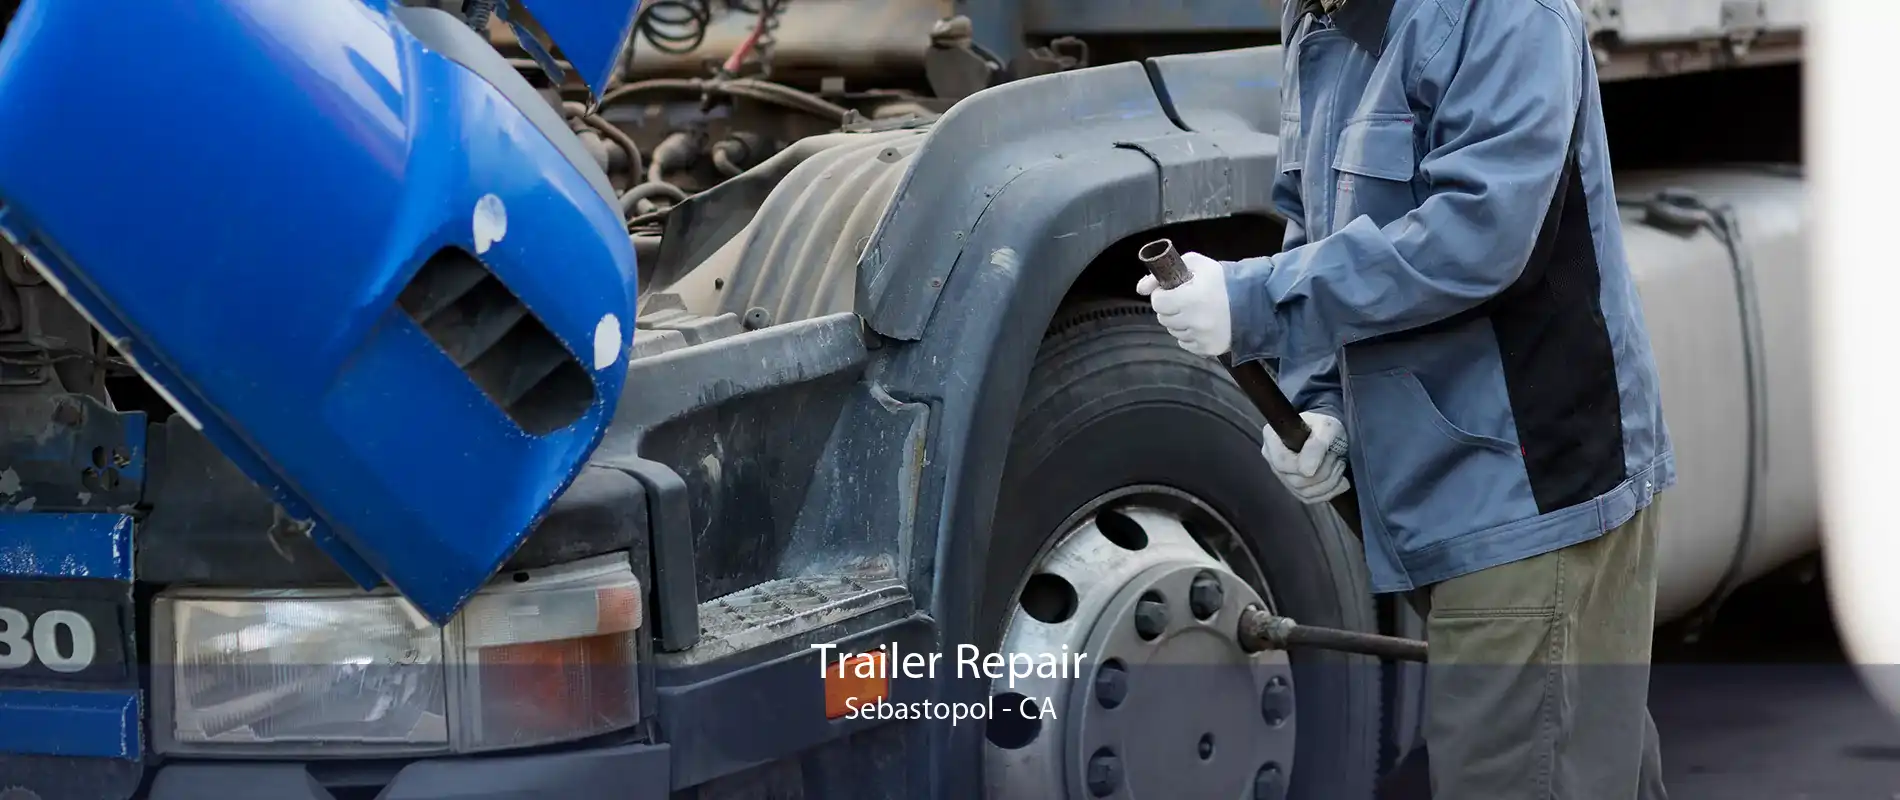 Trailer Repair Sebastopol - CA